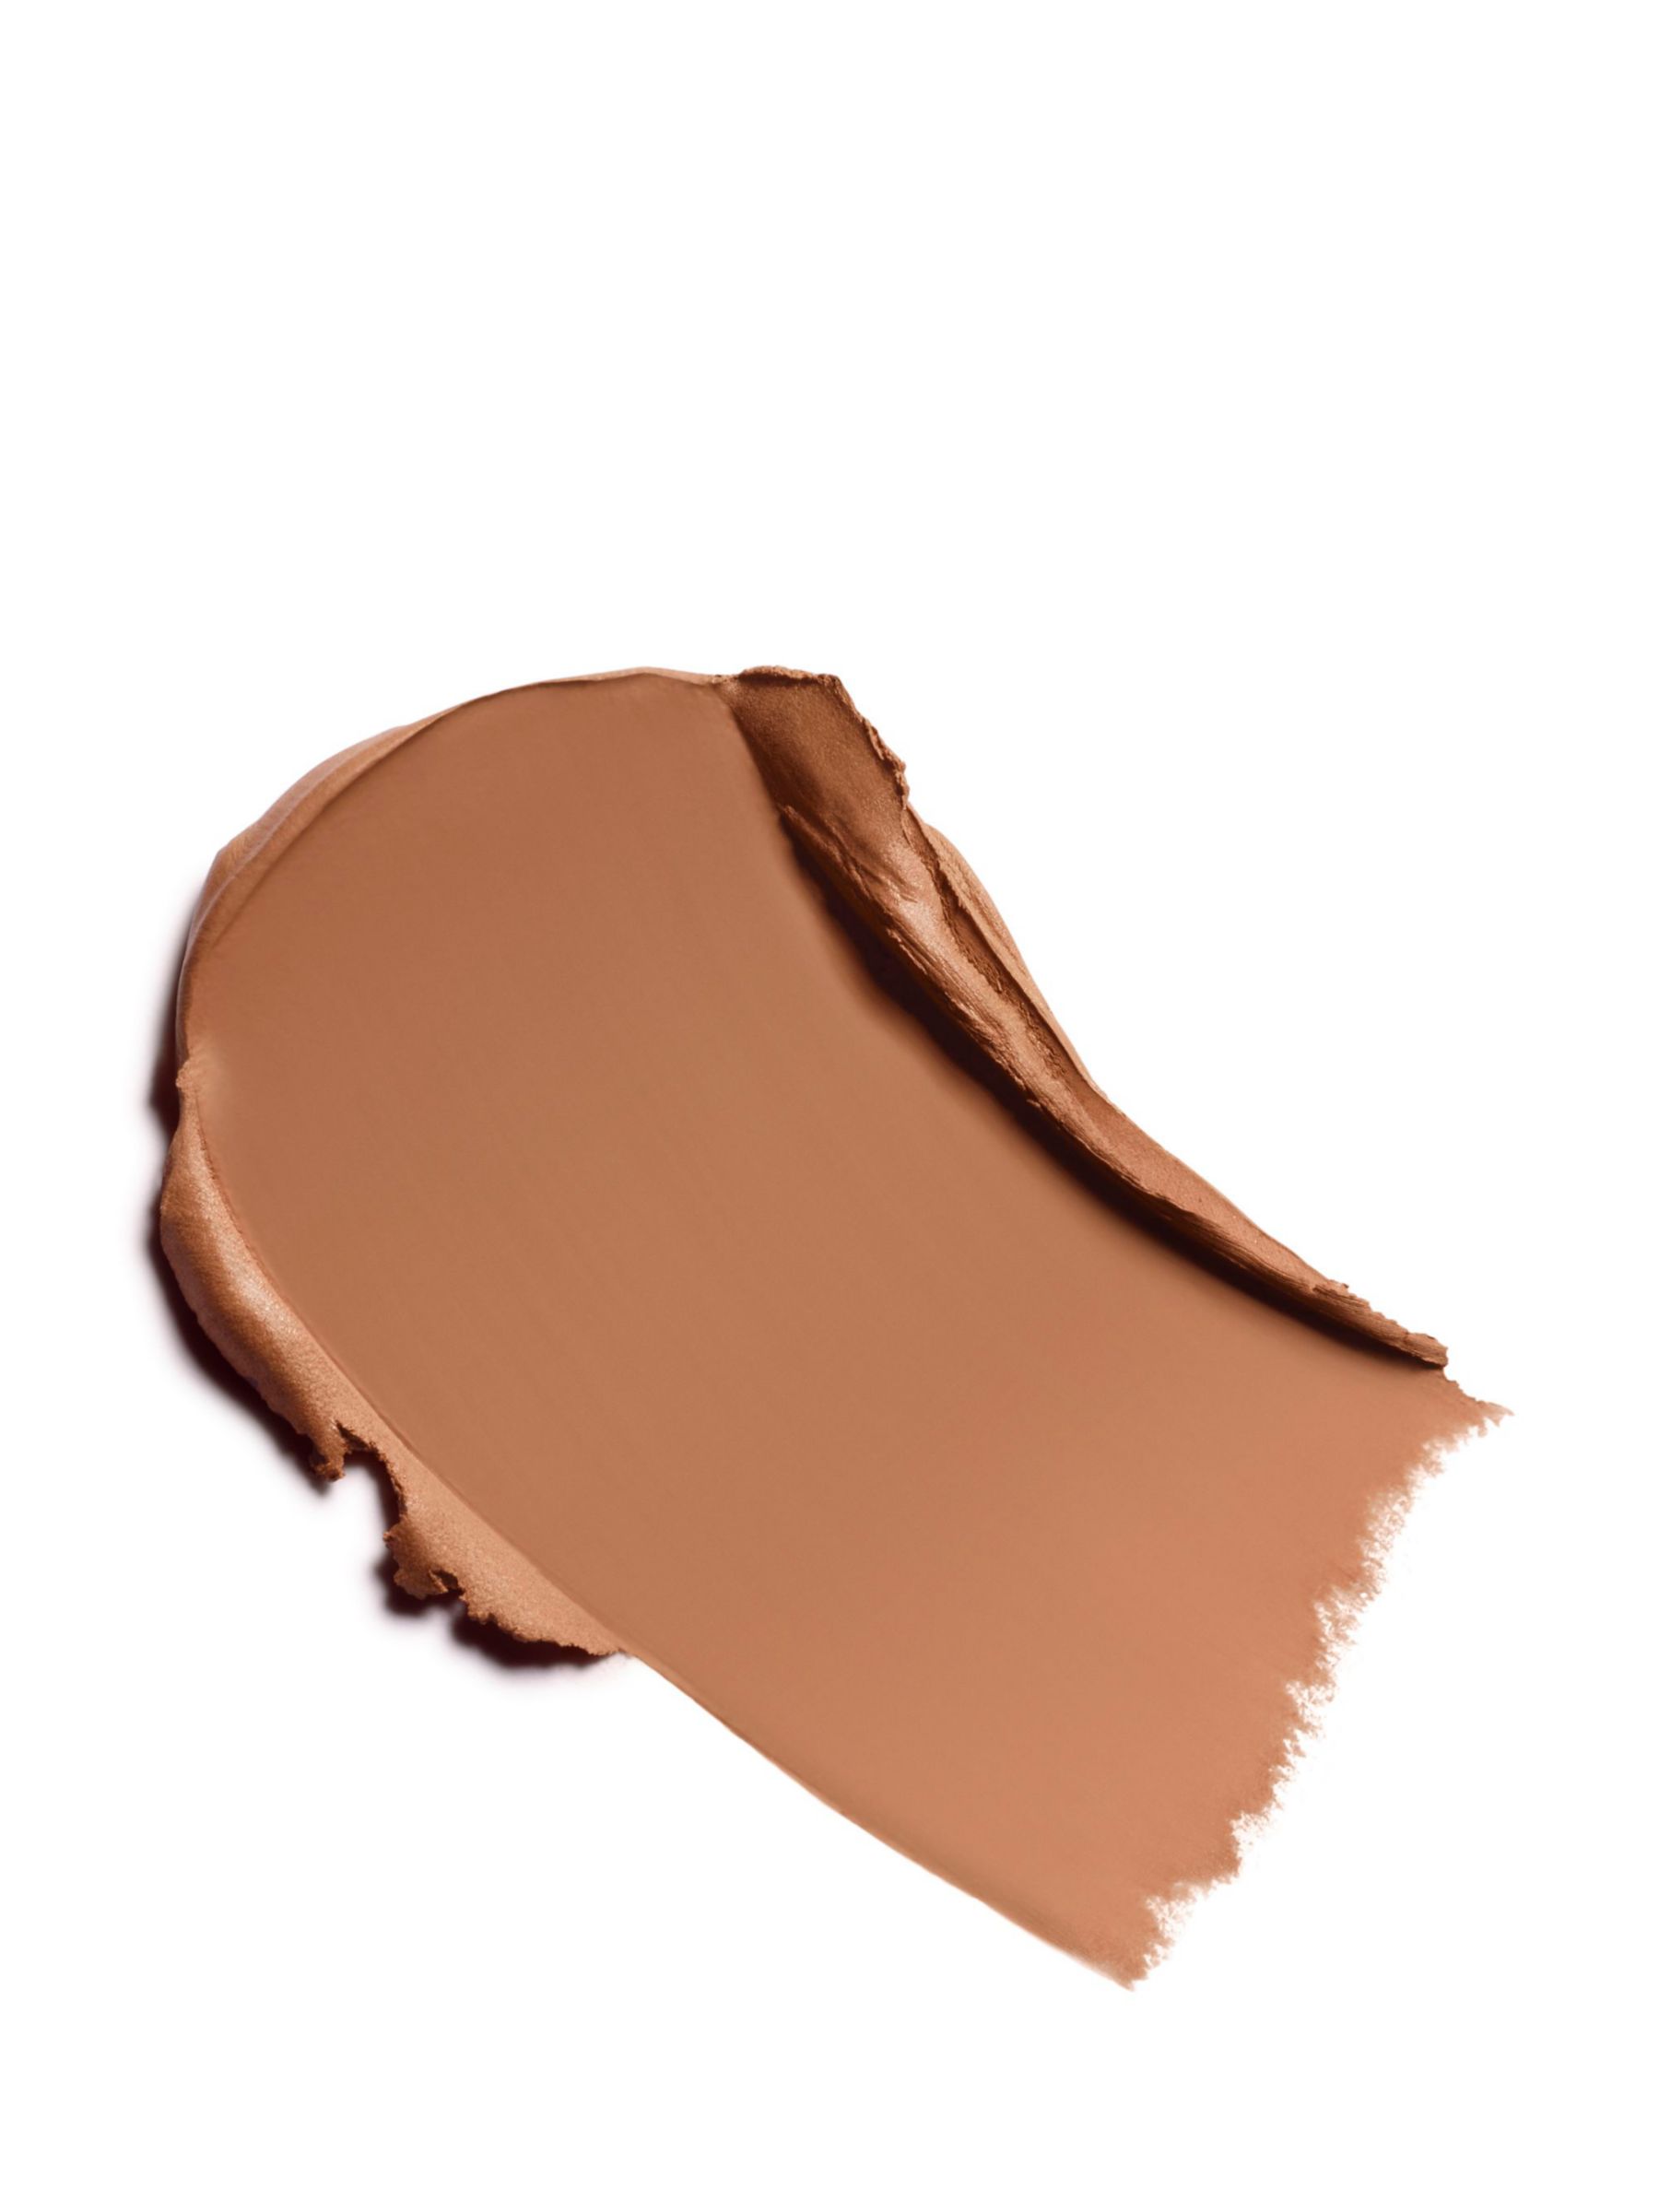 NEW! Chanel Les Beiges Healthy Glow Cream Bronzer 392 Medium